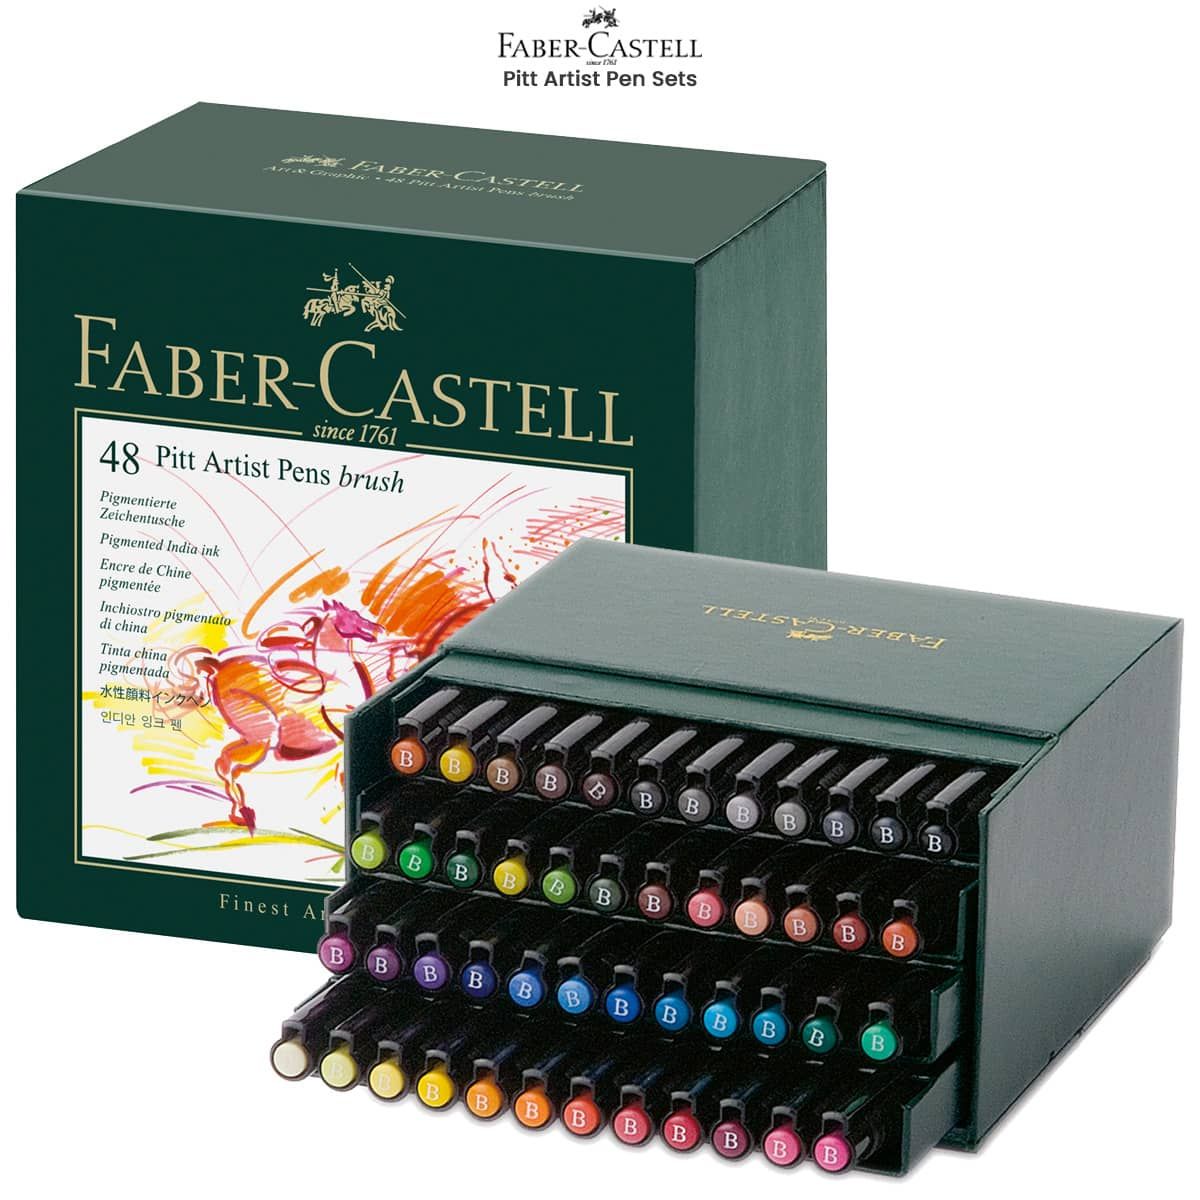 Faber Castell Classic Pitt Artist Pen Set